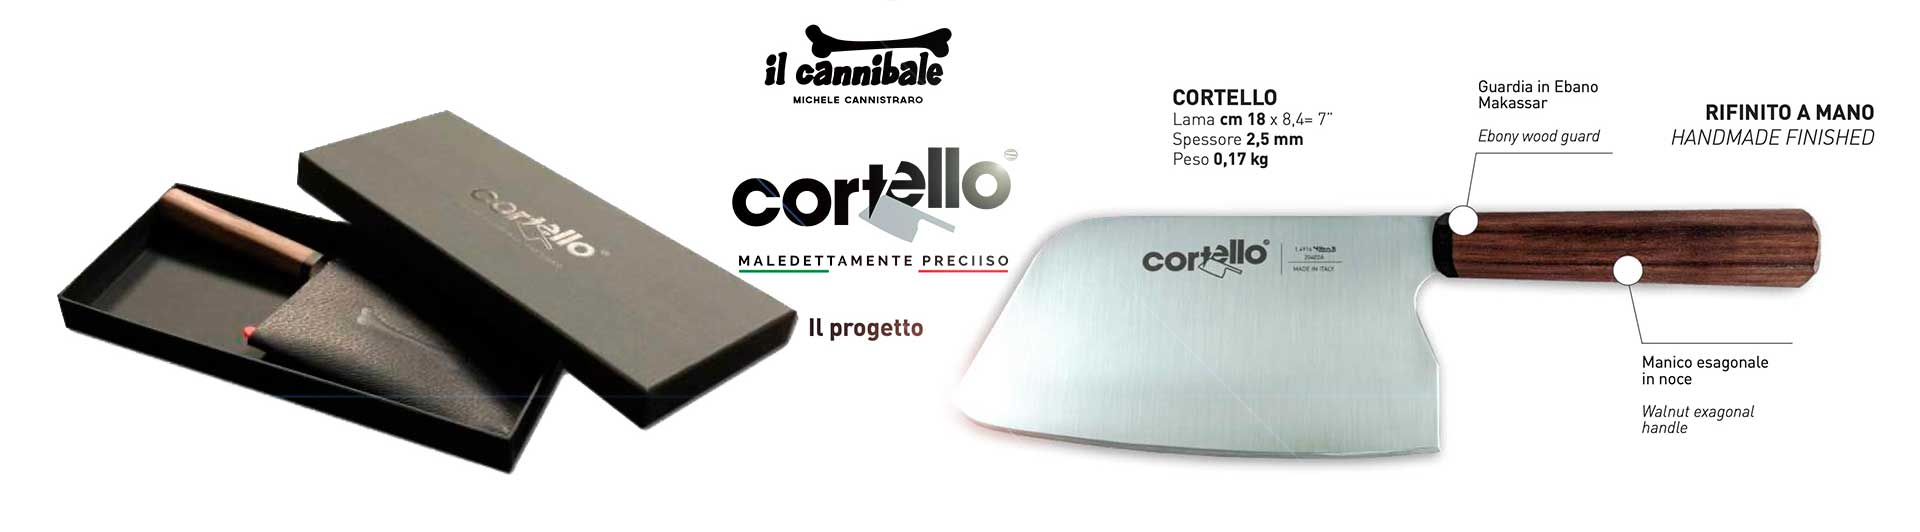 Ambrogio Sanelli - CORTELLO by Il Cannibale